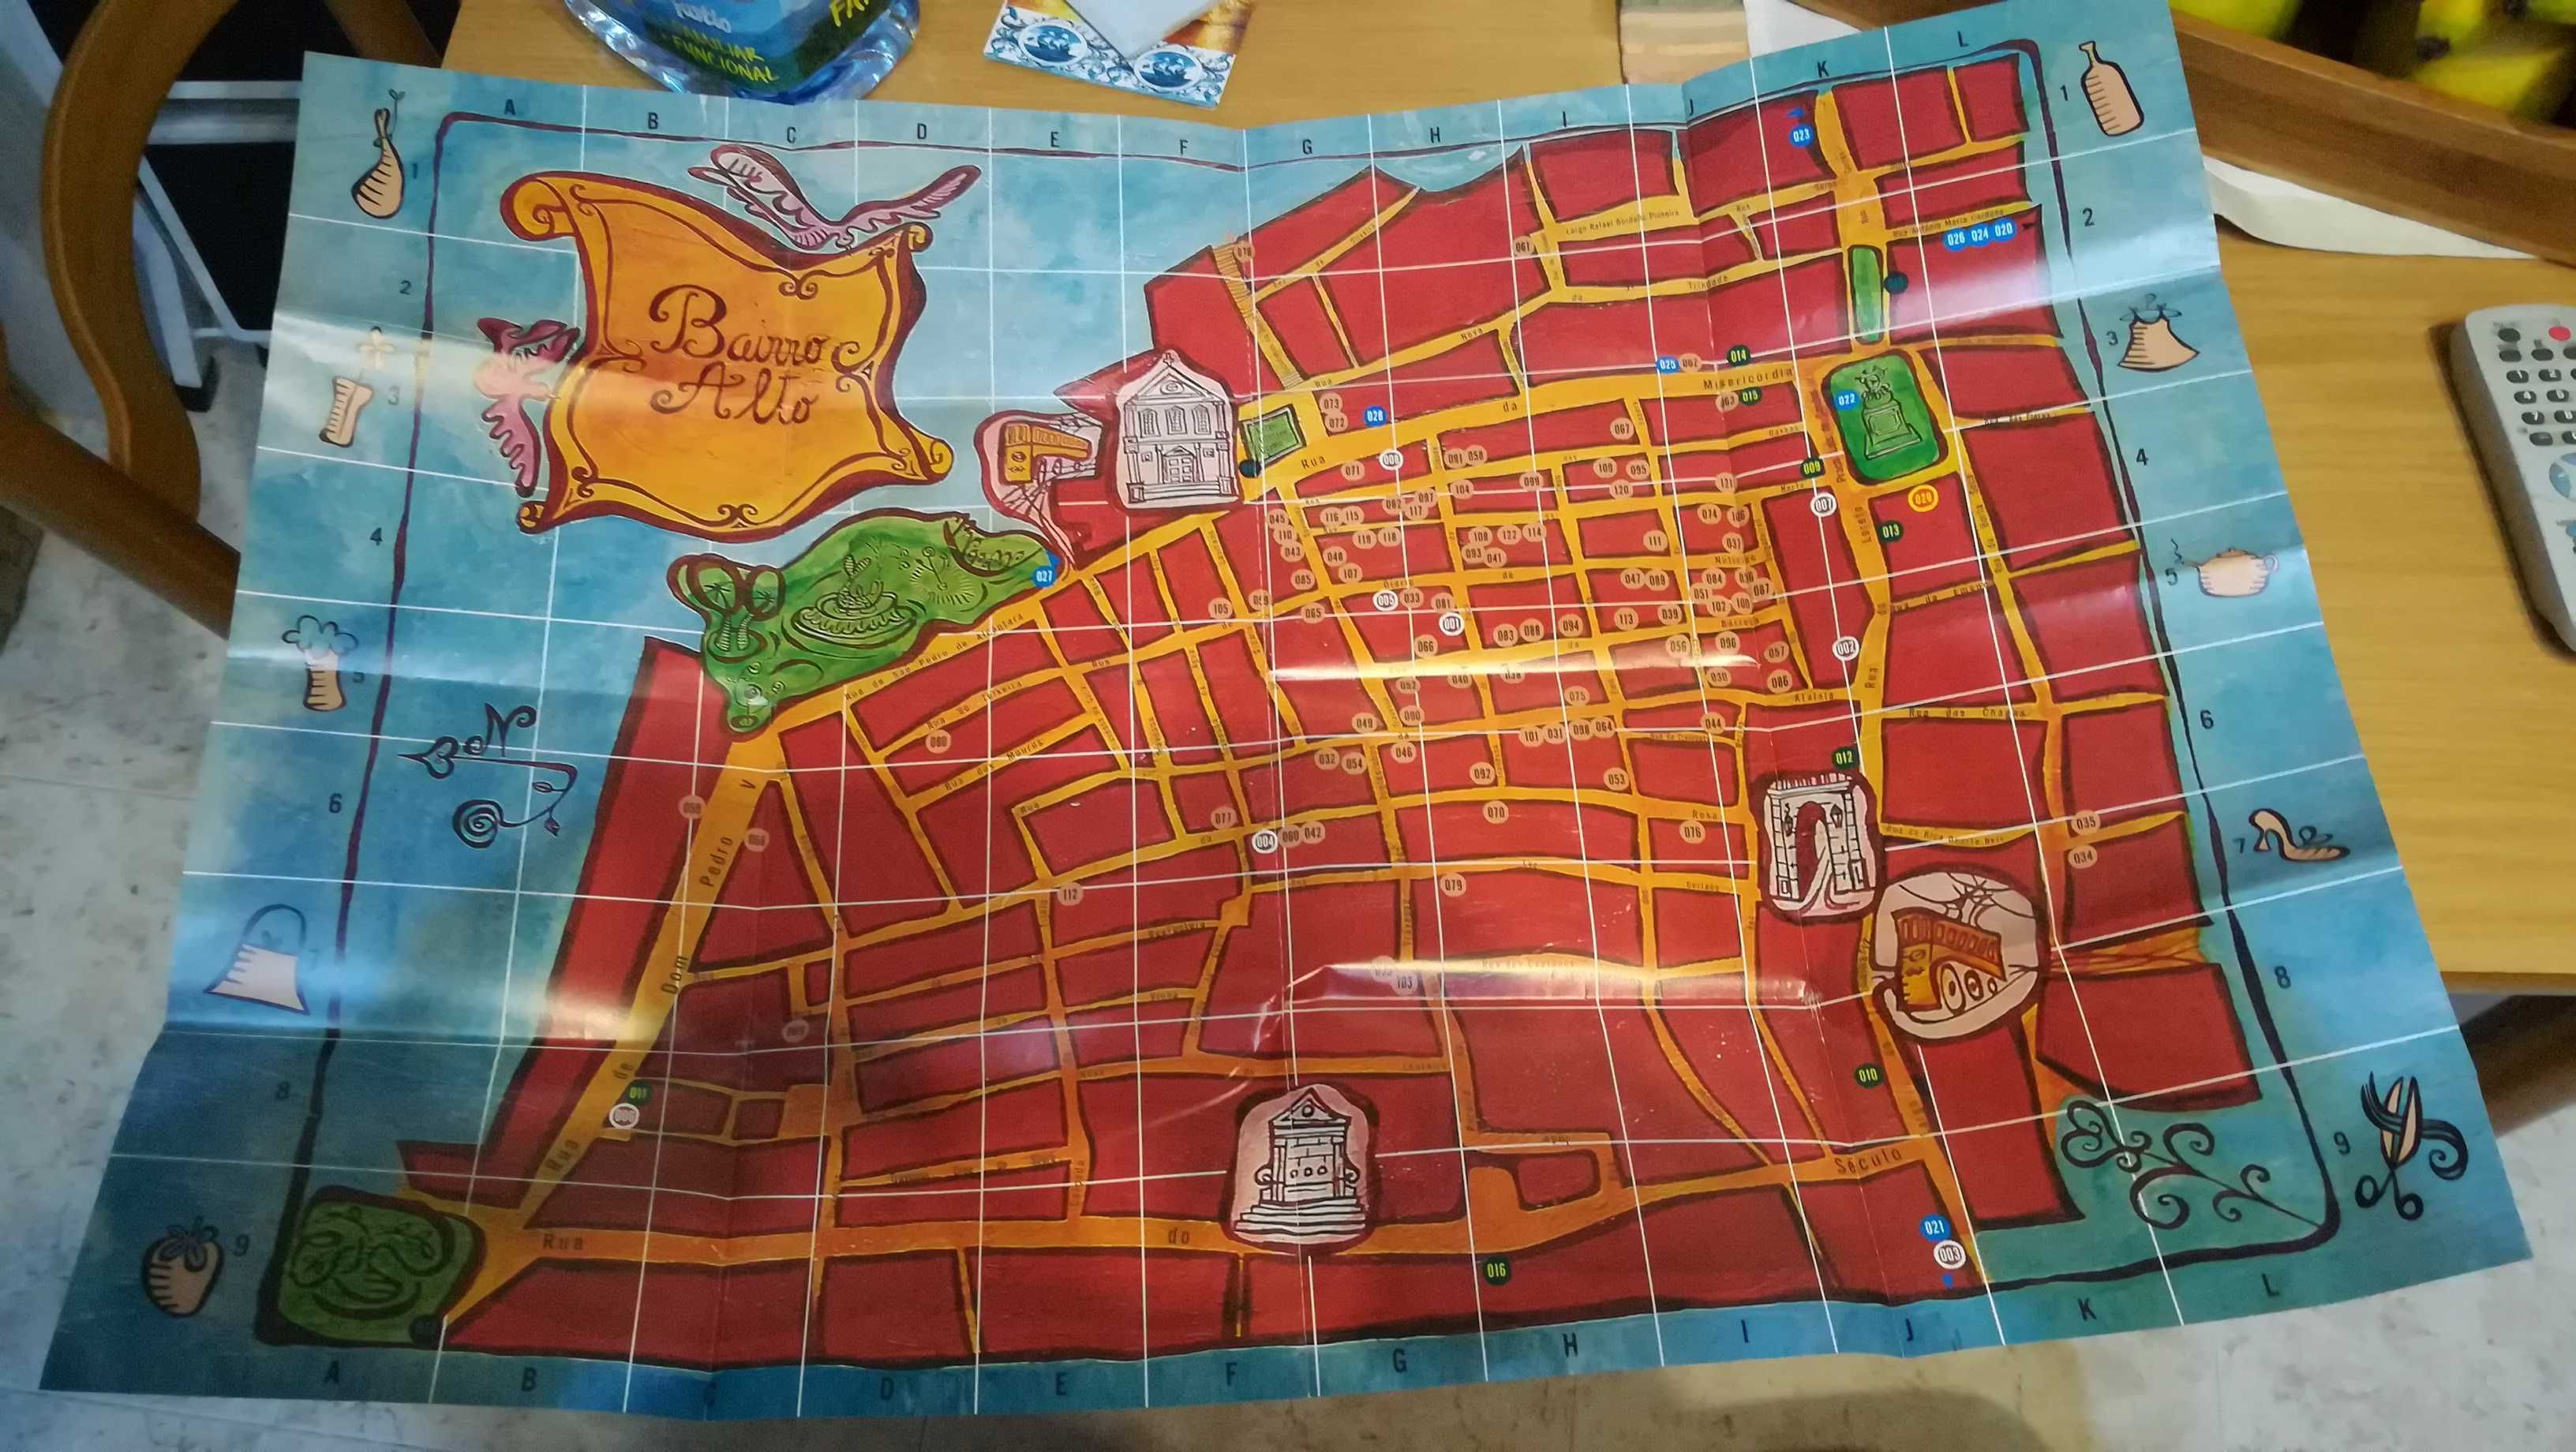 Mapa ilustrado do Bairro Alto, Lisboa (mapa com cerca de vinte anos)